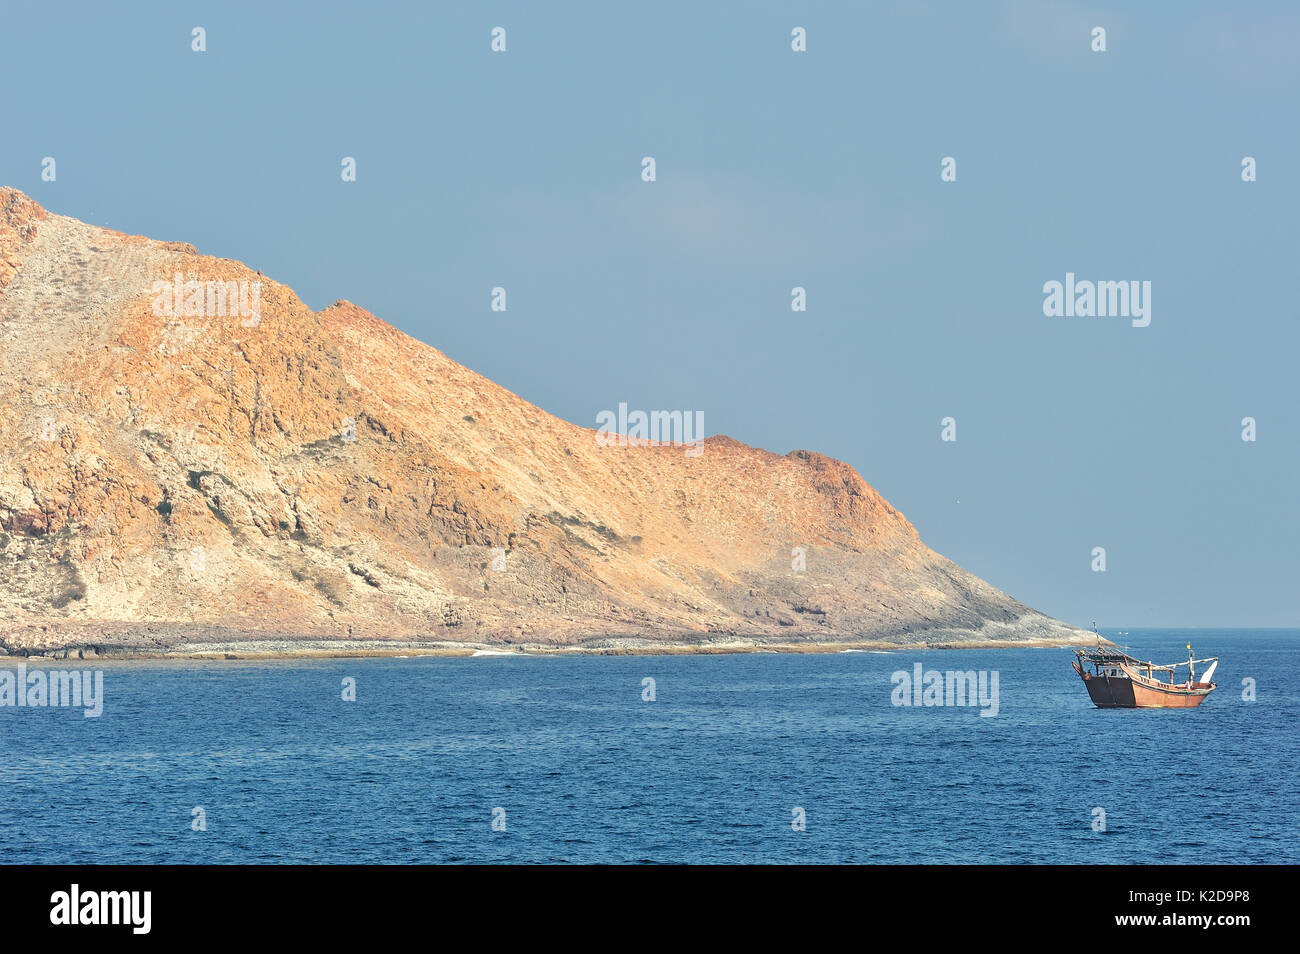 Un bateau de pêche à proximité de Al Qibliyah island, une des îles Hallaniyat, côte de Dhofar, Oman, la mer d'Oman Banque D'Images